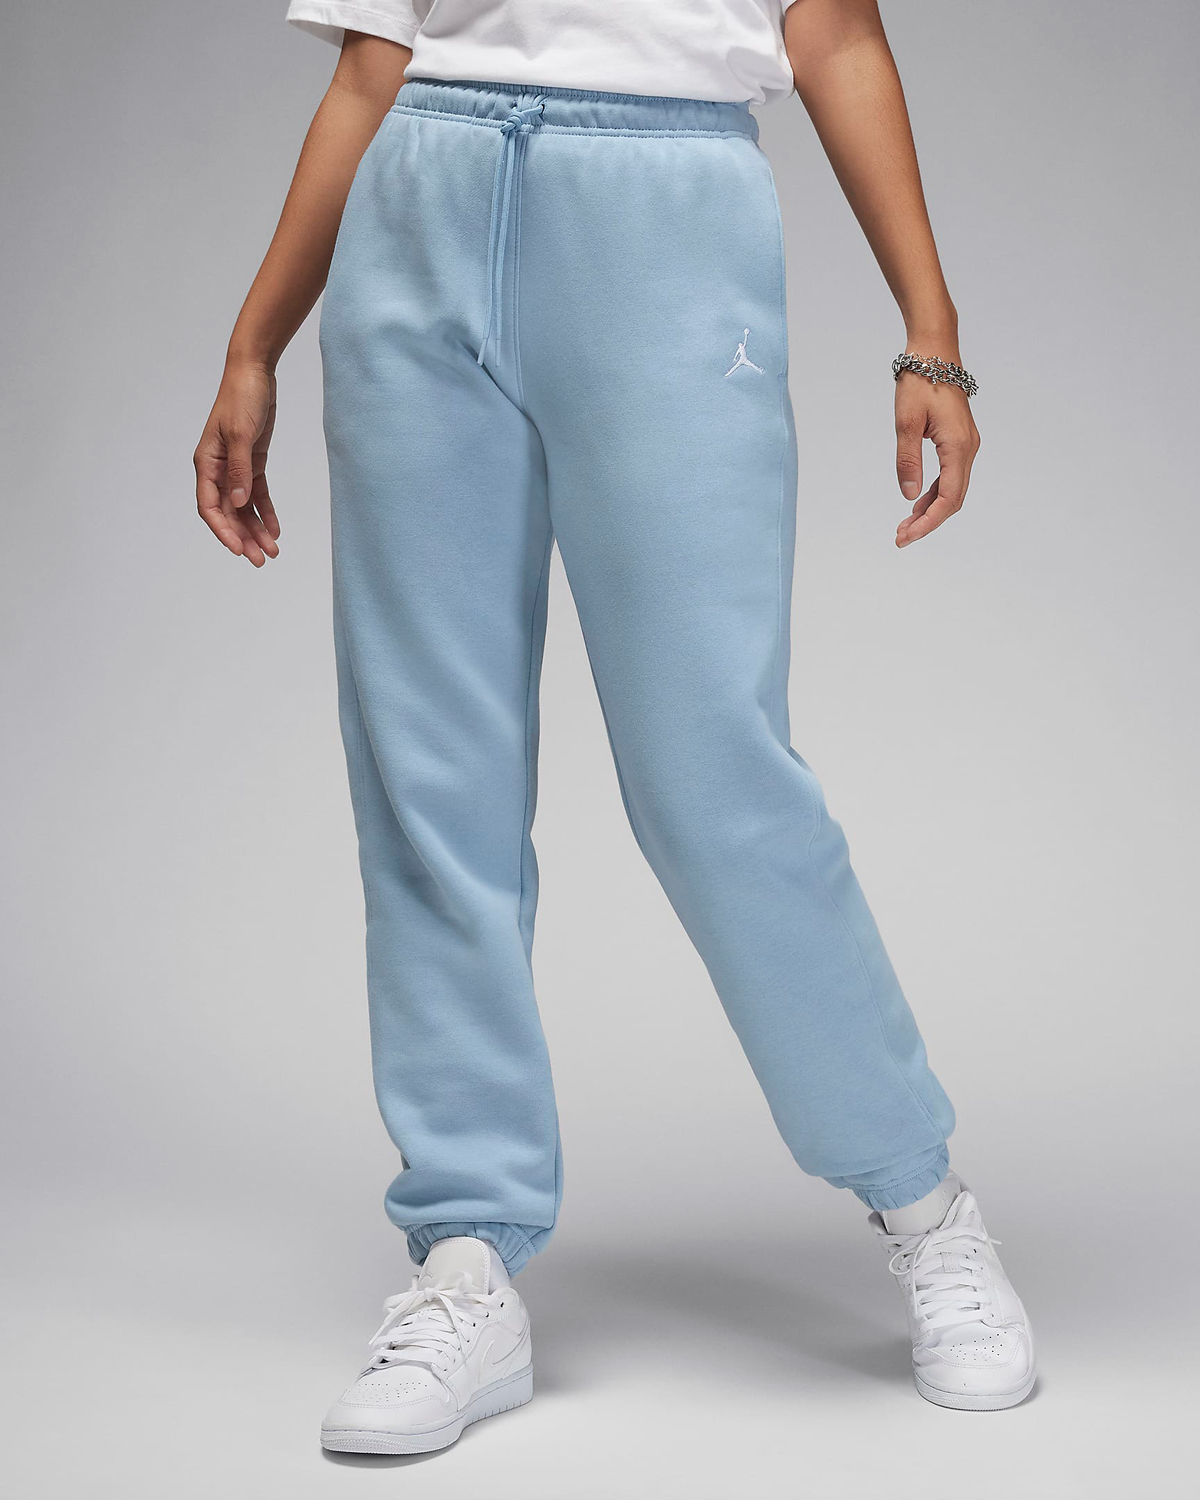 Jordan-Brooklyn-Womens-Pants-Blue-Grey